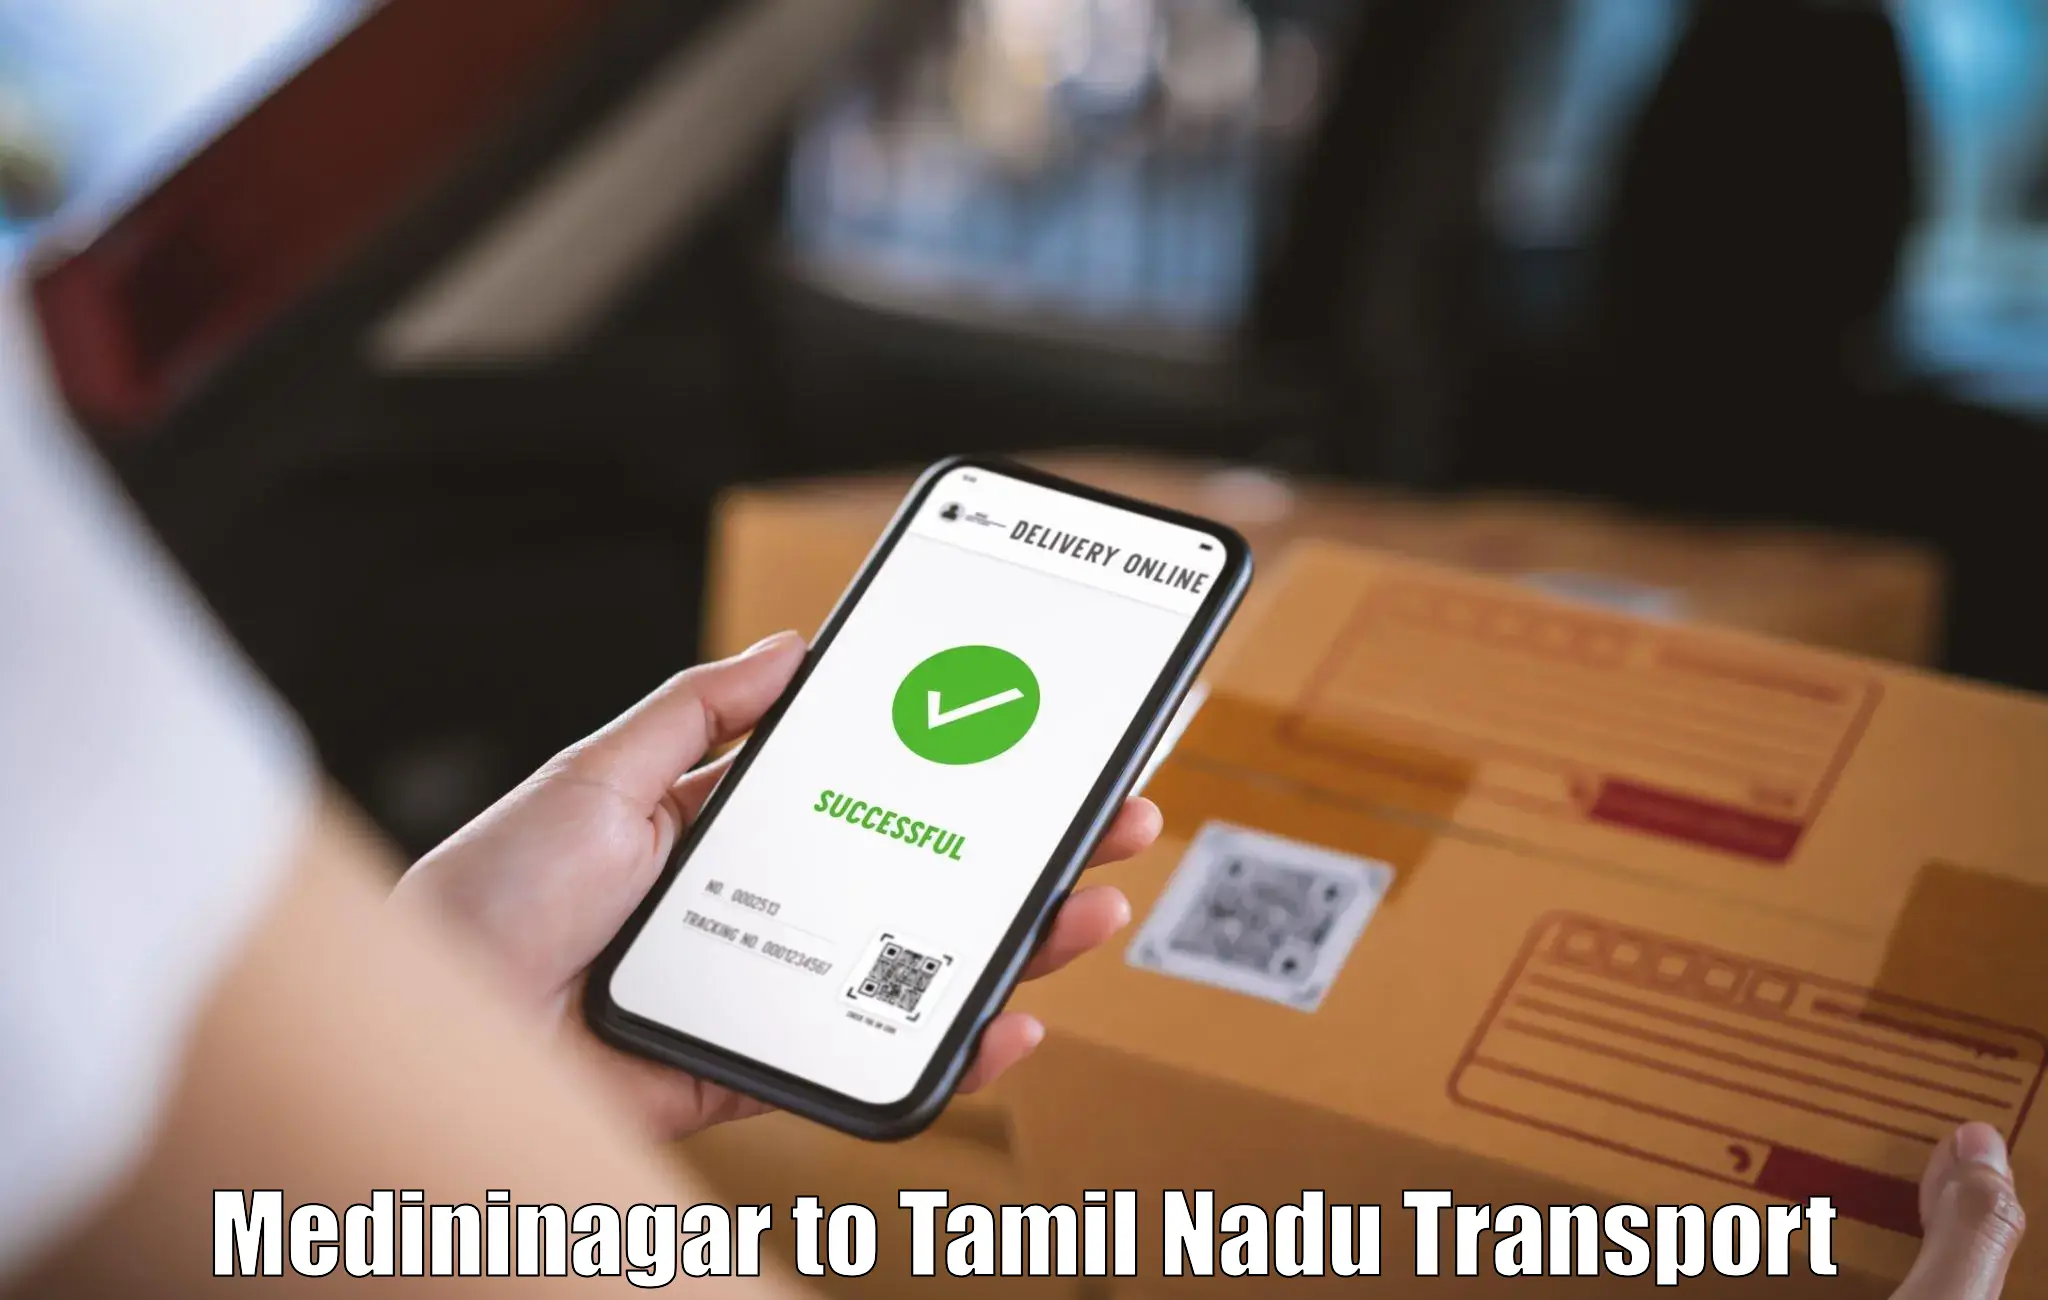 Transport in sharing Medininagar to Sattur